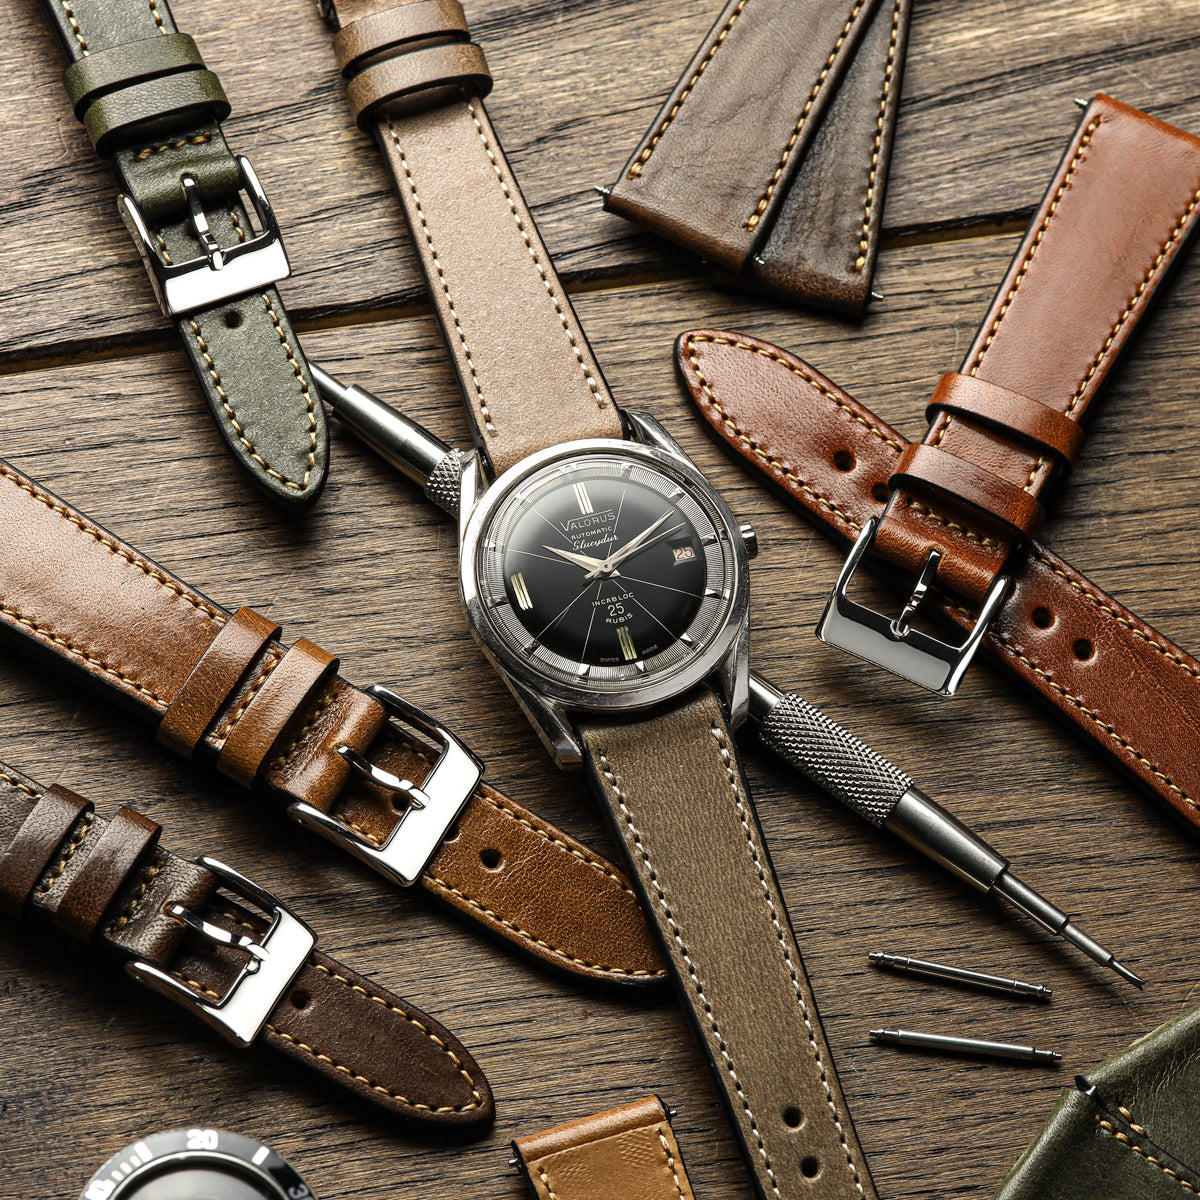 Radstock Missouri Vintage Leather Watch Strap - Dark Brown